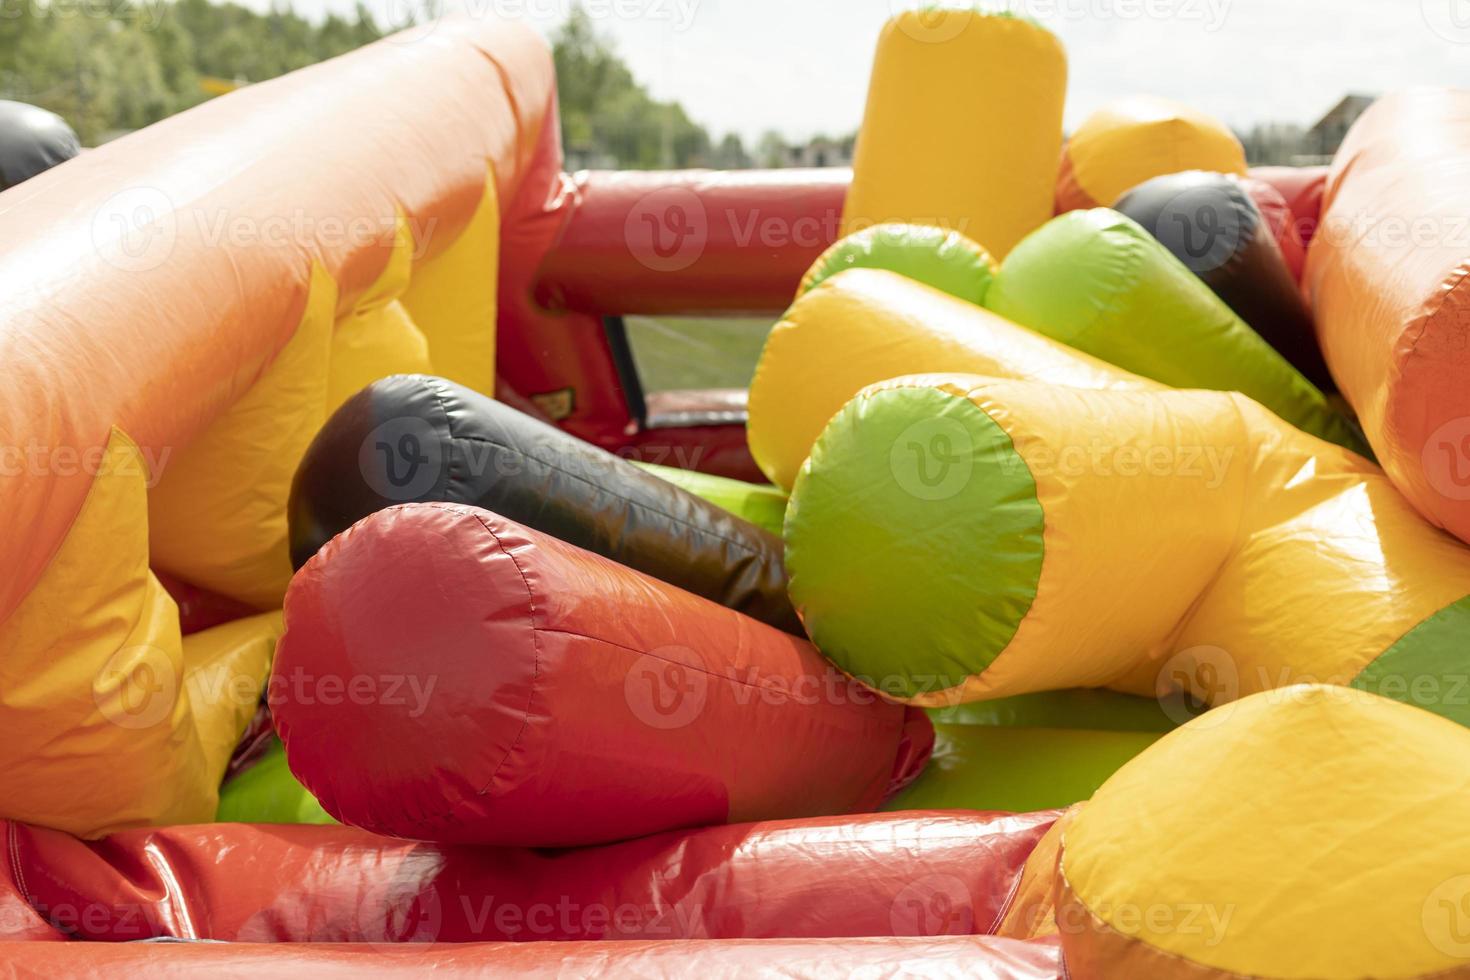 Trampolín inflable que se desinfla. reunión del parque de atracciones. Detalles del parque infantil. foto